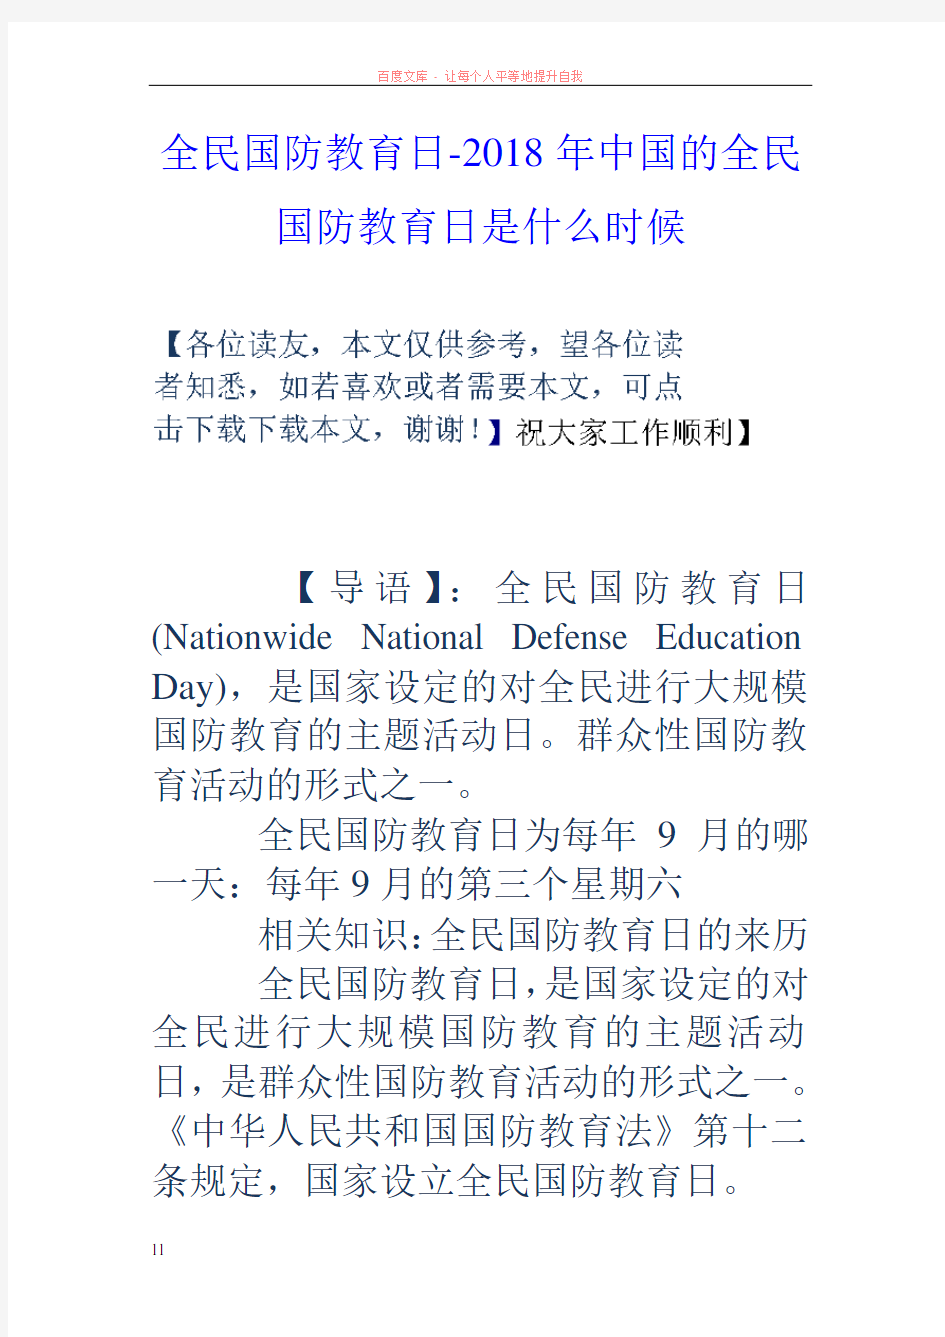 全民国防教育日2020年中国的全民国防教育日是什么时候